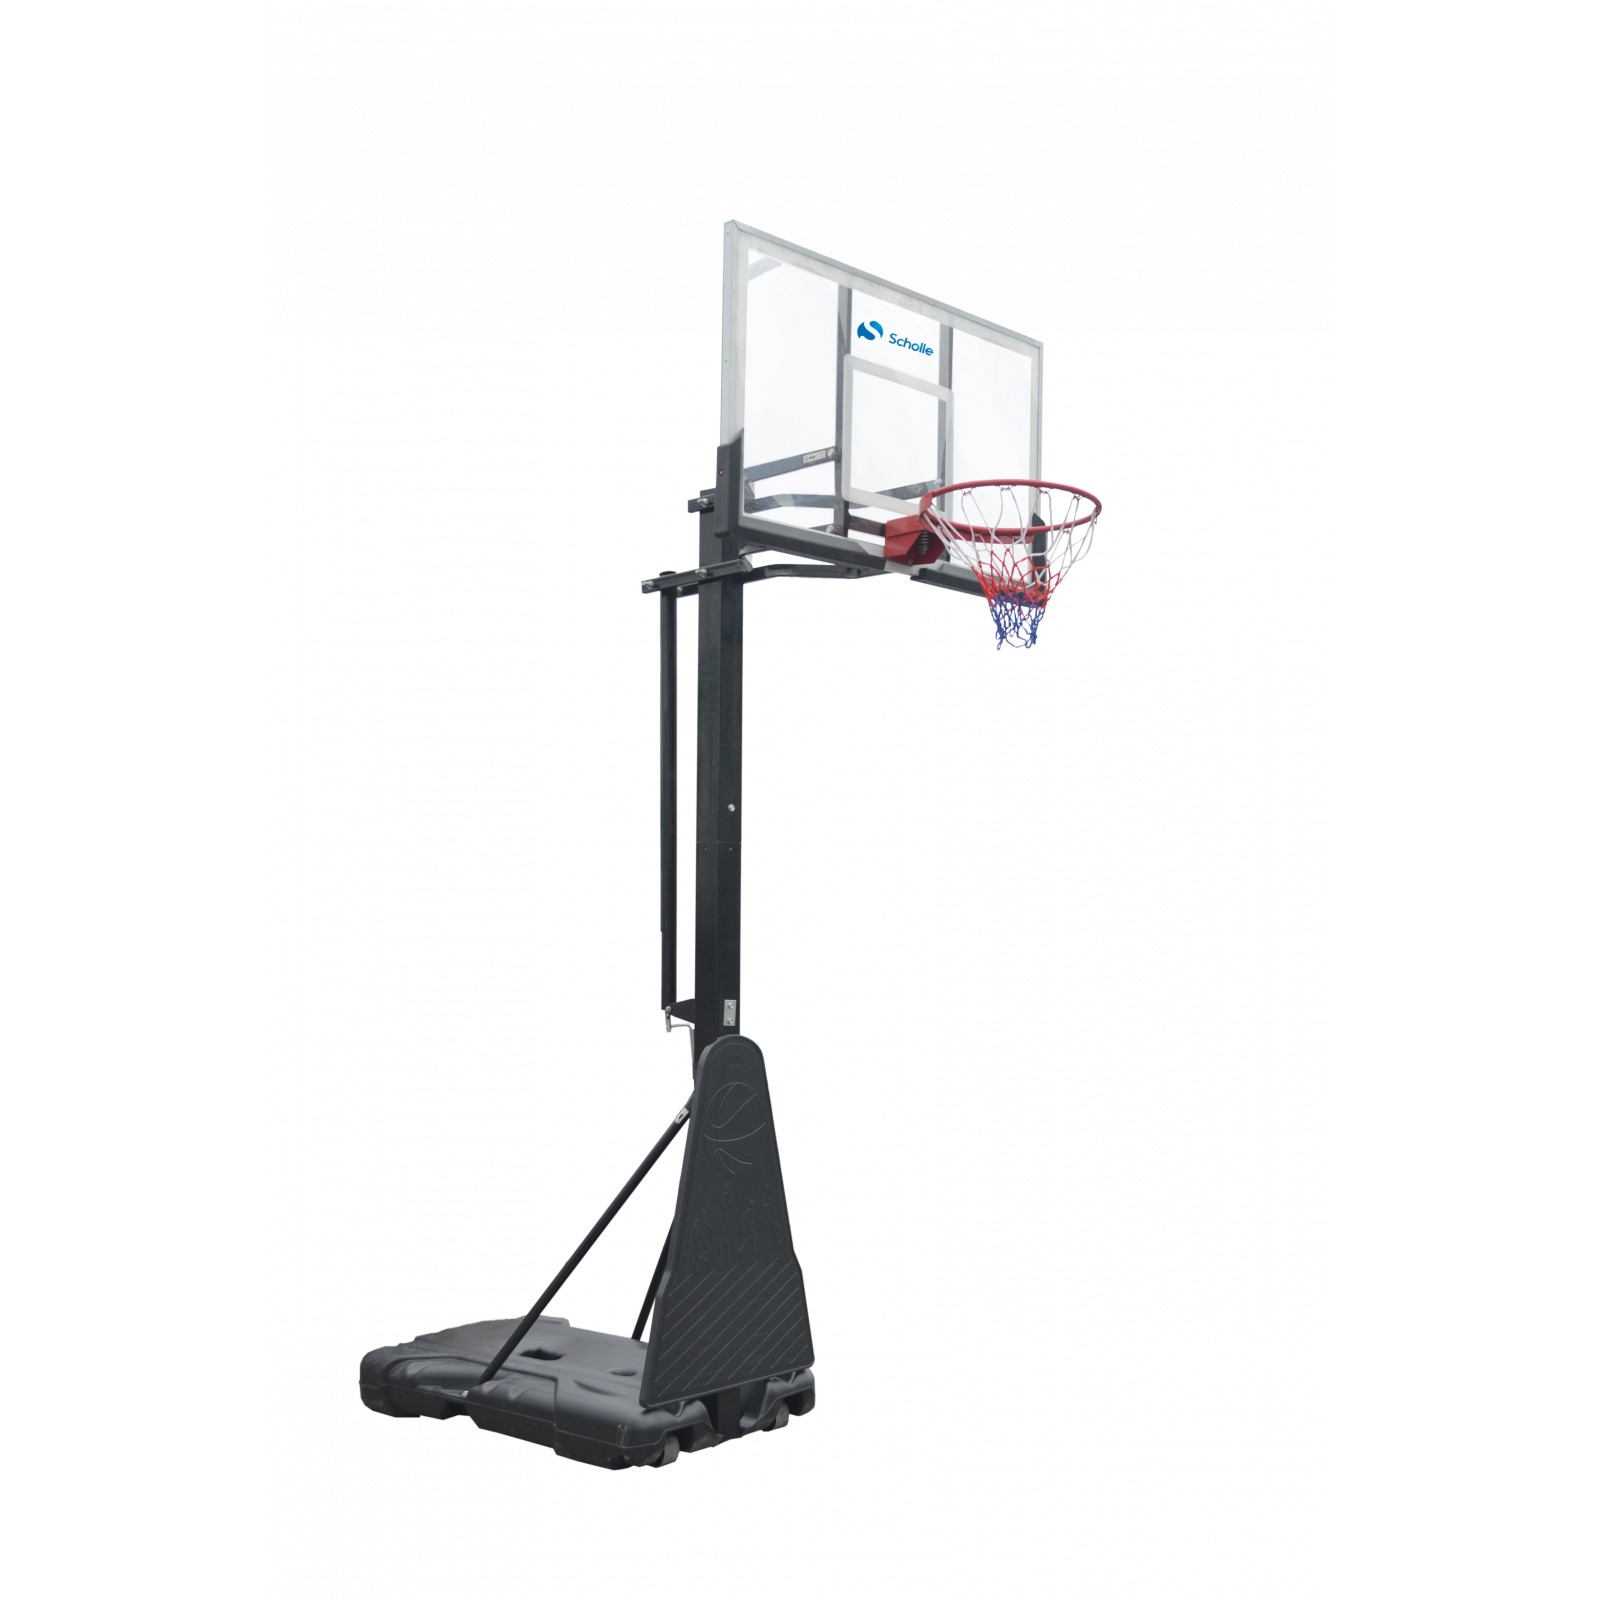 Мобильная баскетбольная стойка Scholle S023 1600_1600